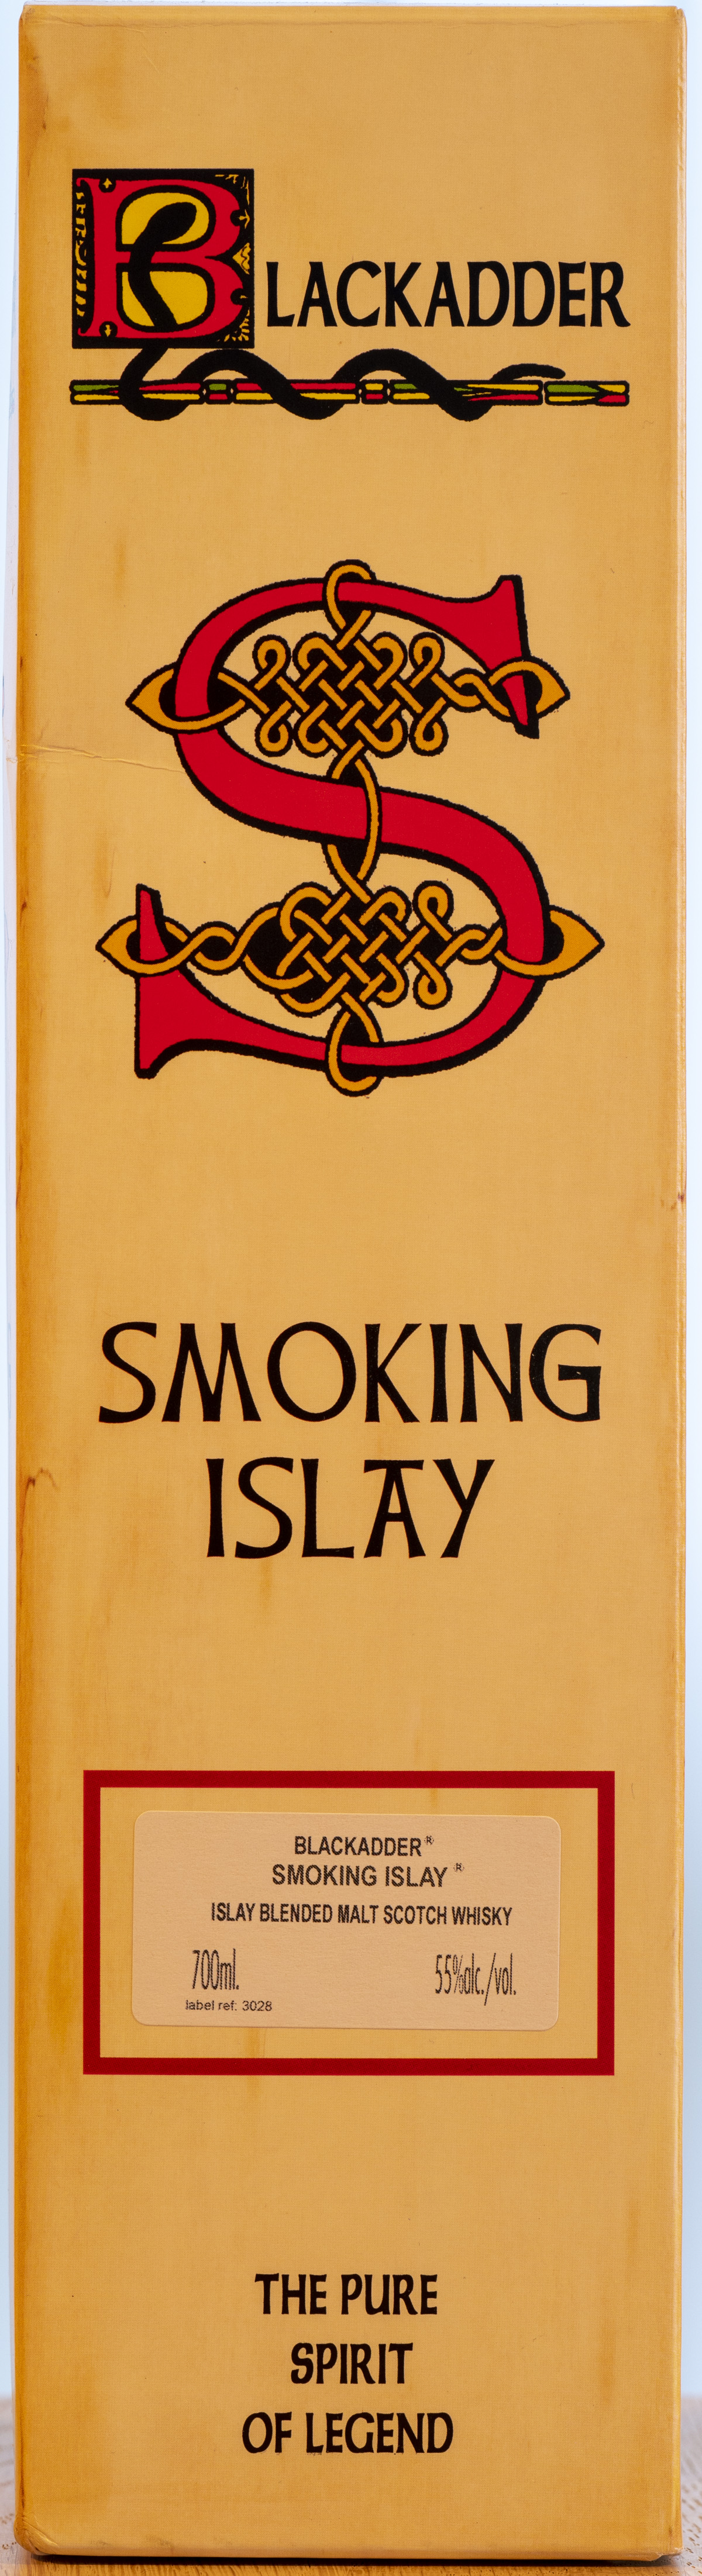 Billede: PHC_3930 - Smoking Islay - box front.jpg